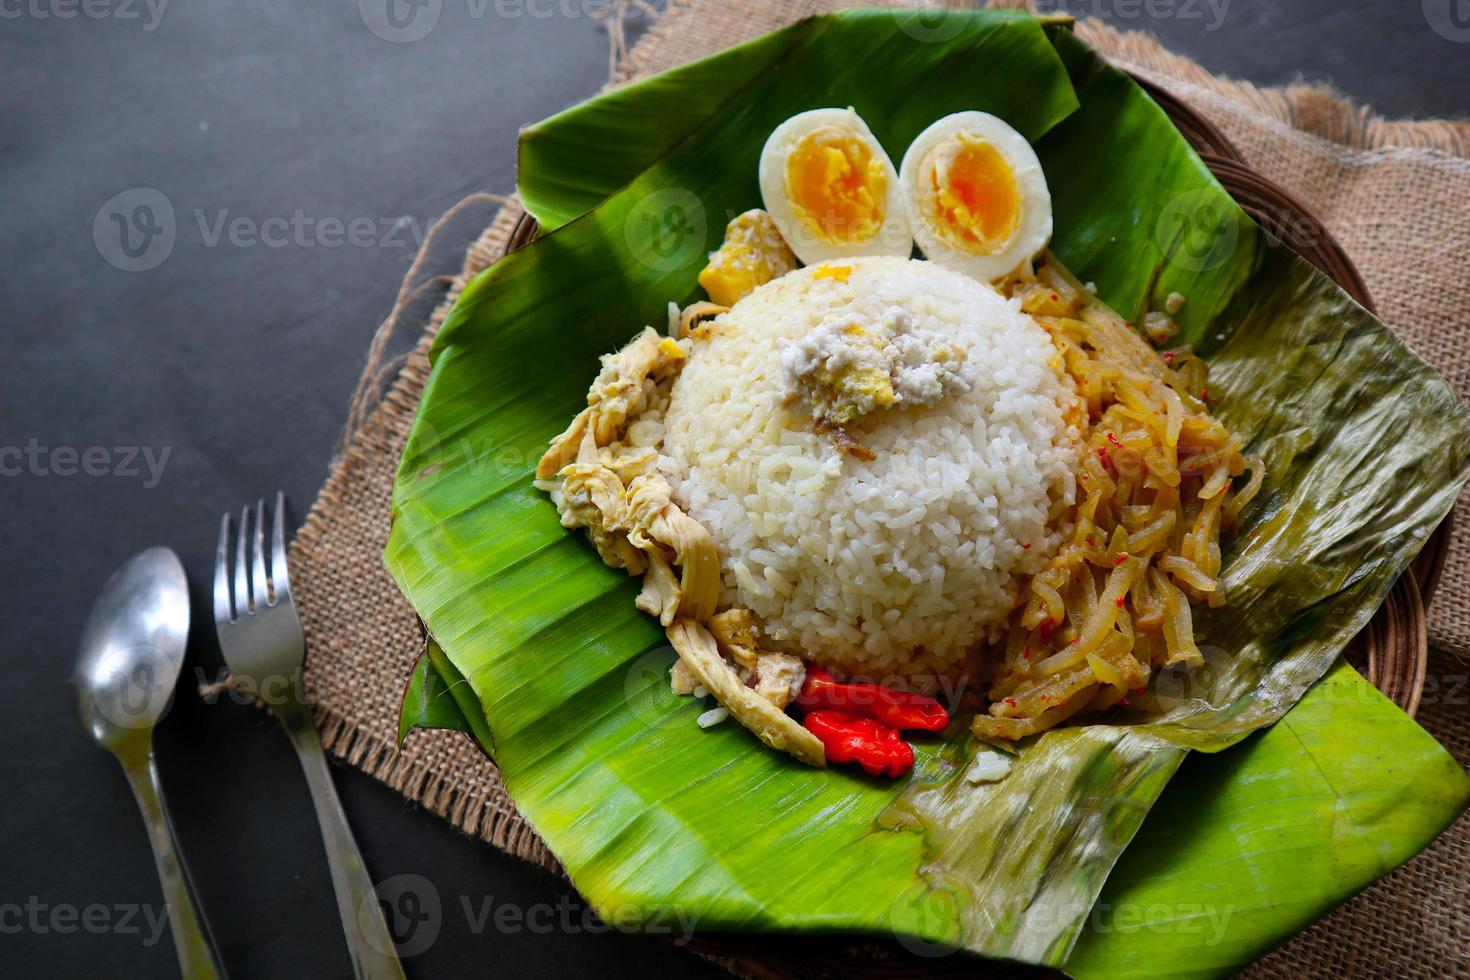 Nasi Liwet Solo oder Sego Liwet Solo ist ein traditionelles Essen aus Surakarta. aus wohlschmeckendem Reis, Chayote und gekochtem Ei, Hühnchen, dicker Kokosmilch, serviert auf einem Bananenblatt foto